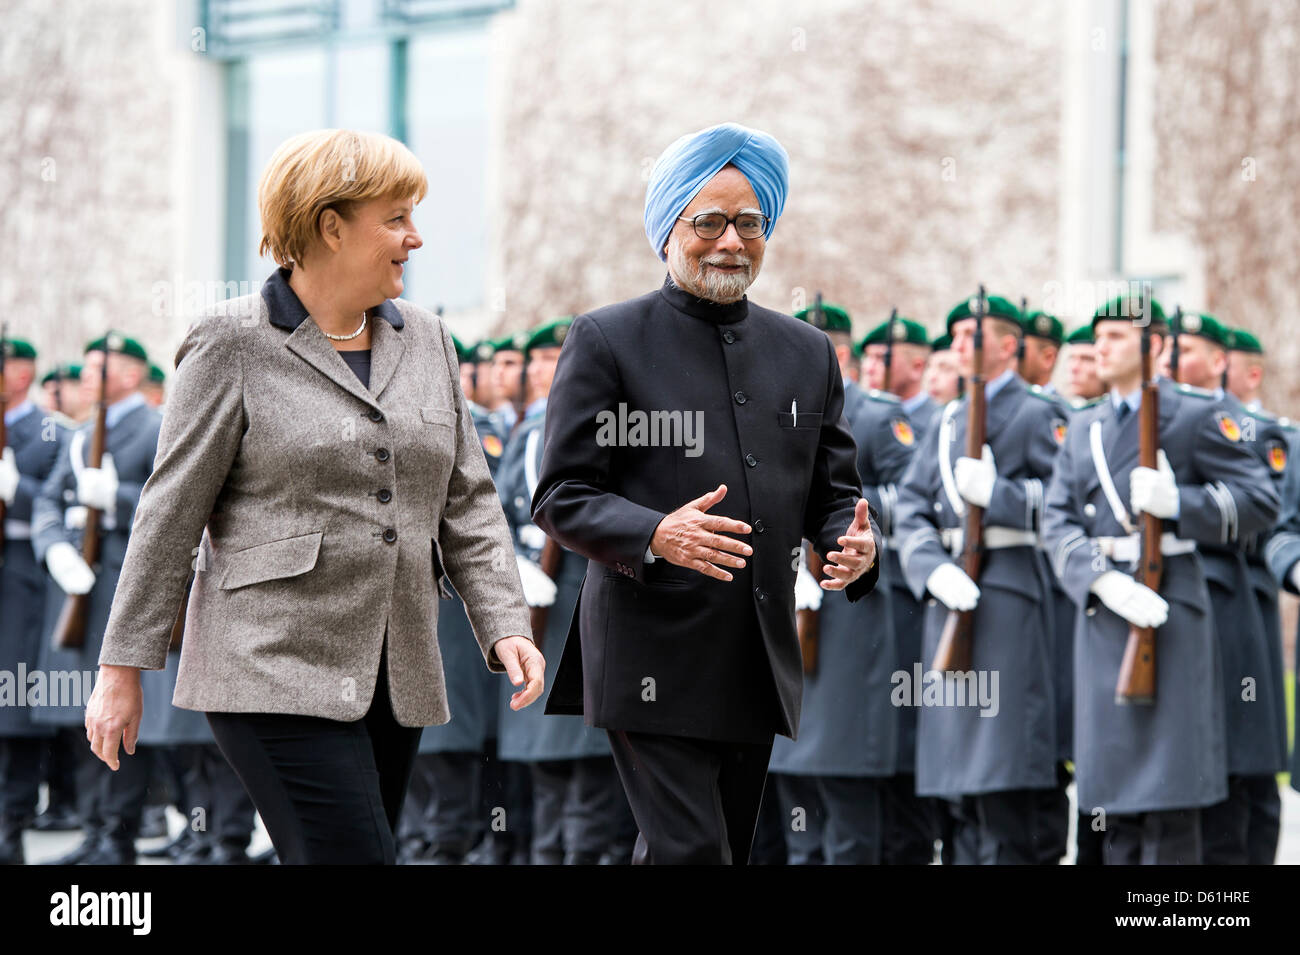 Berlin, Allemagne.11 avril 2013.La chancelière allemande, Angela Merkel se félicite le Premier Ministre de l'Inde, Manmohan Singh, avec les honneurs militaires à la Chancellerie fédérale. Crédit Crédit : Gonçalo Silva/Alamy Live News. Banque D'Images